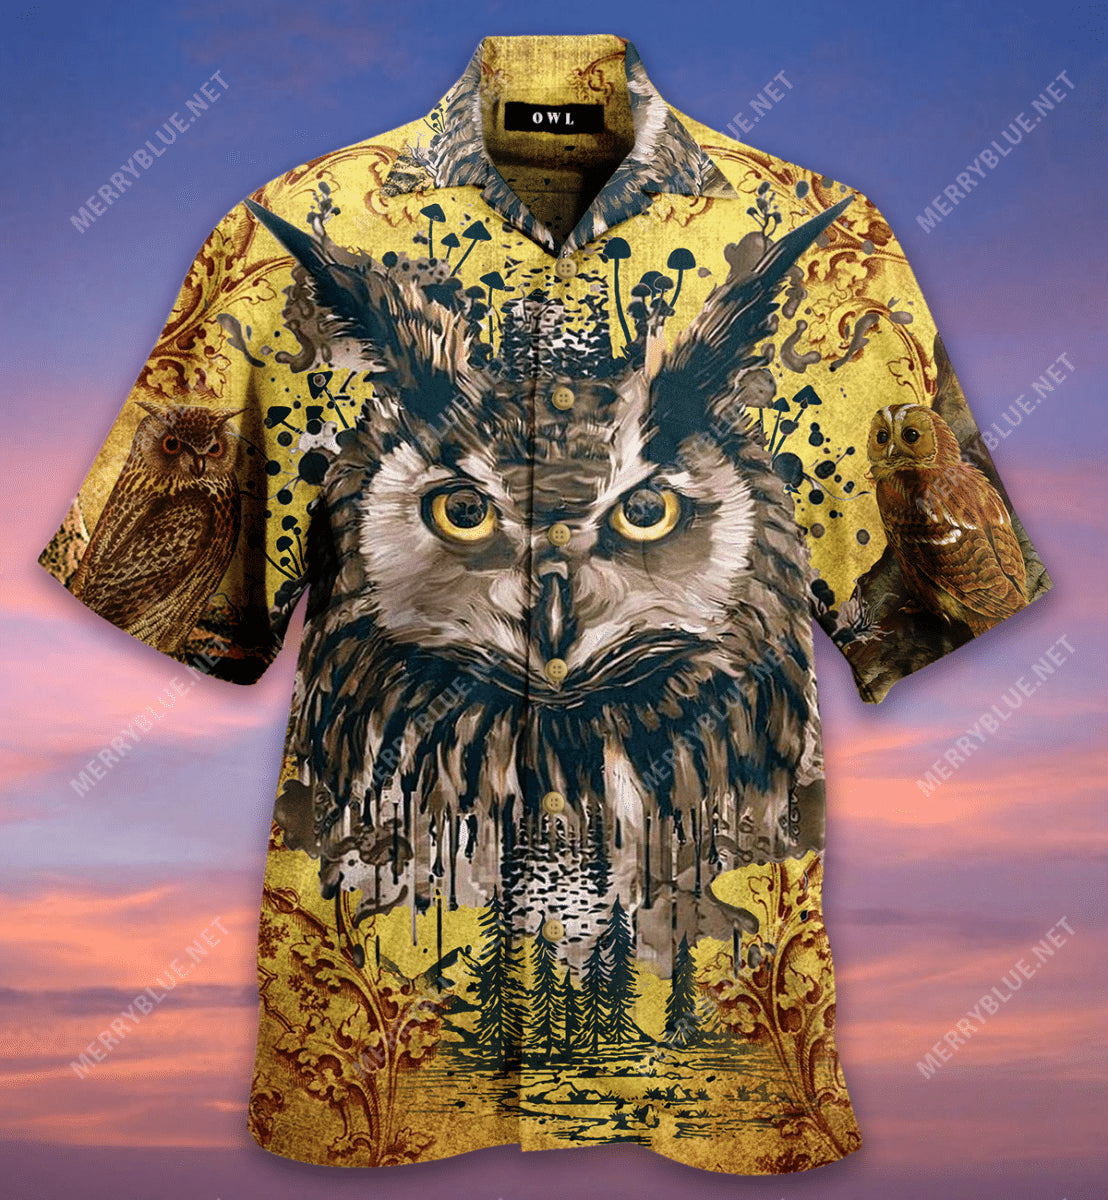 Amazing Vintage Owl Hawaiian Shirt